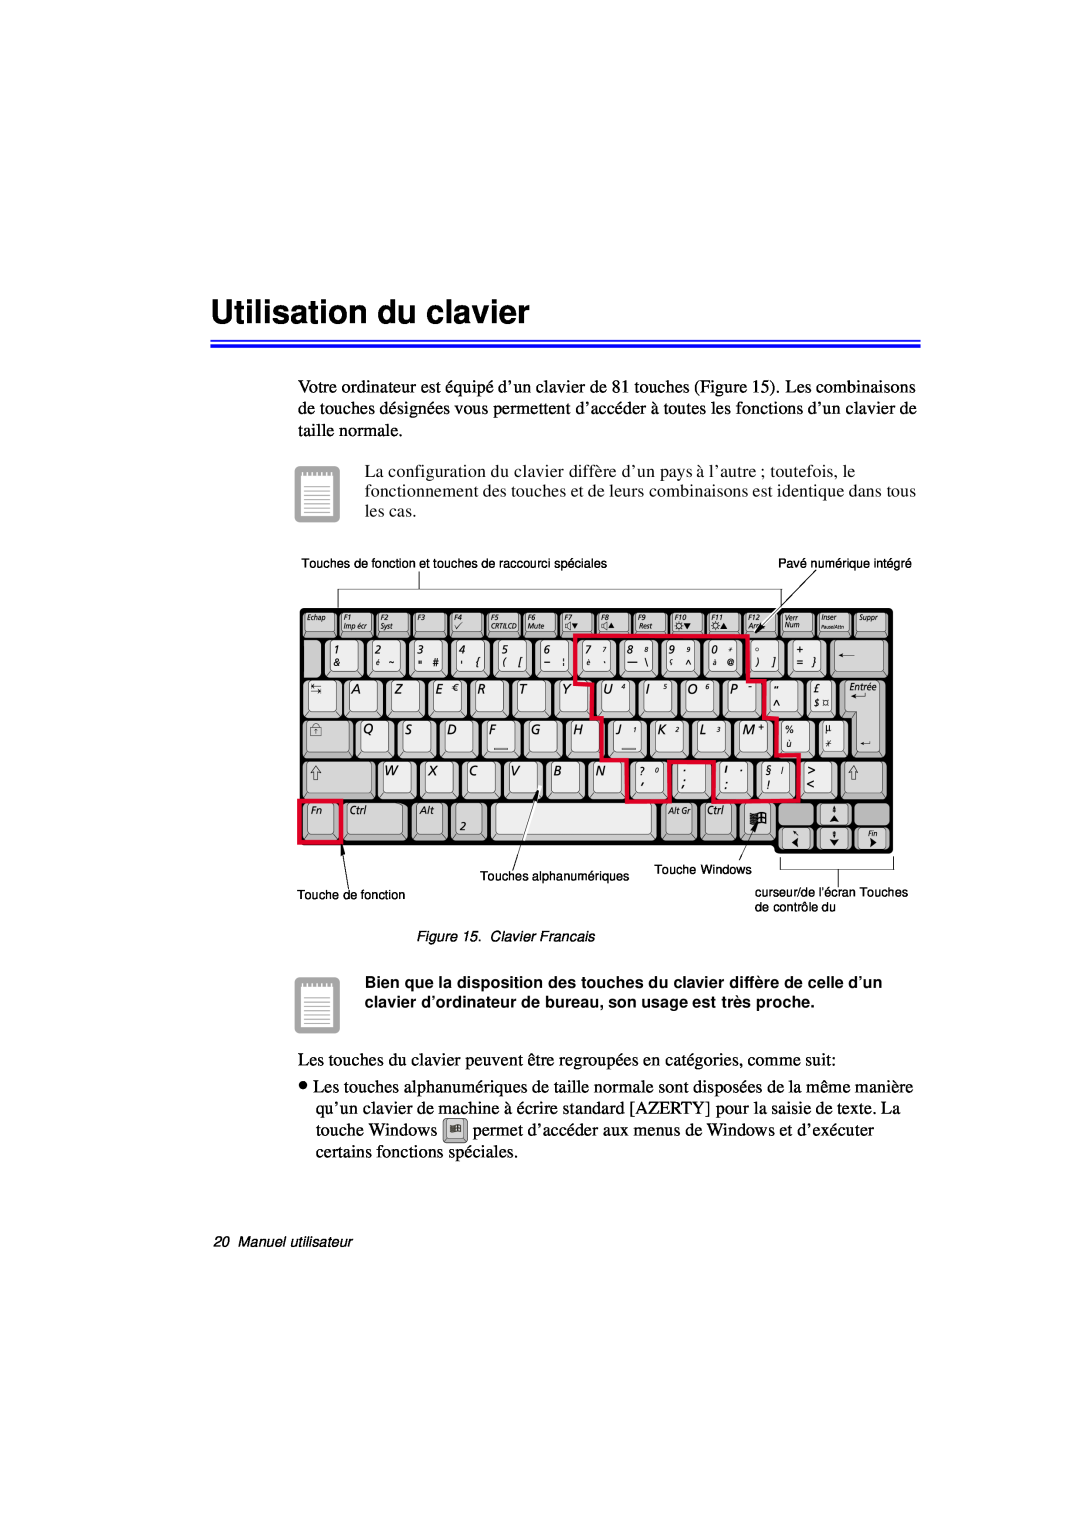 Samsung N760GN2005/SEF, N760PJ2008/SEF, N760PJ2005/SEF manual Utilisation du clavier, Clavier Francais, Manuel utilisateur 